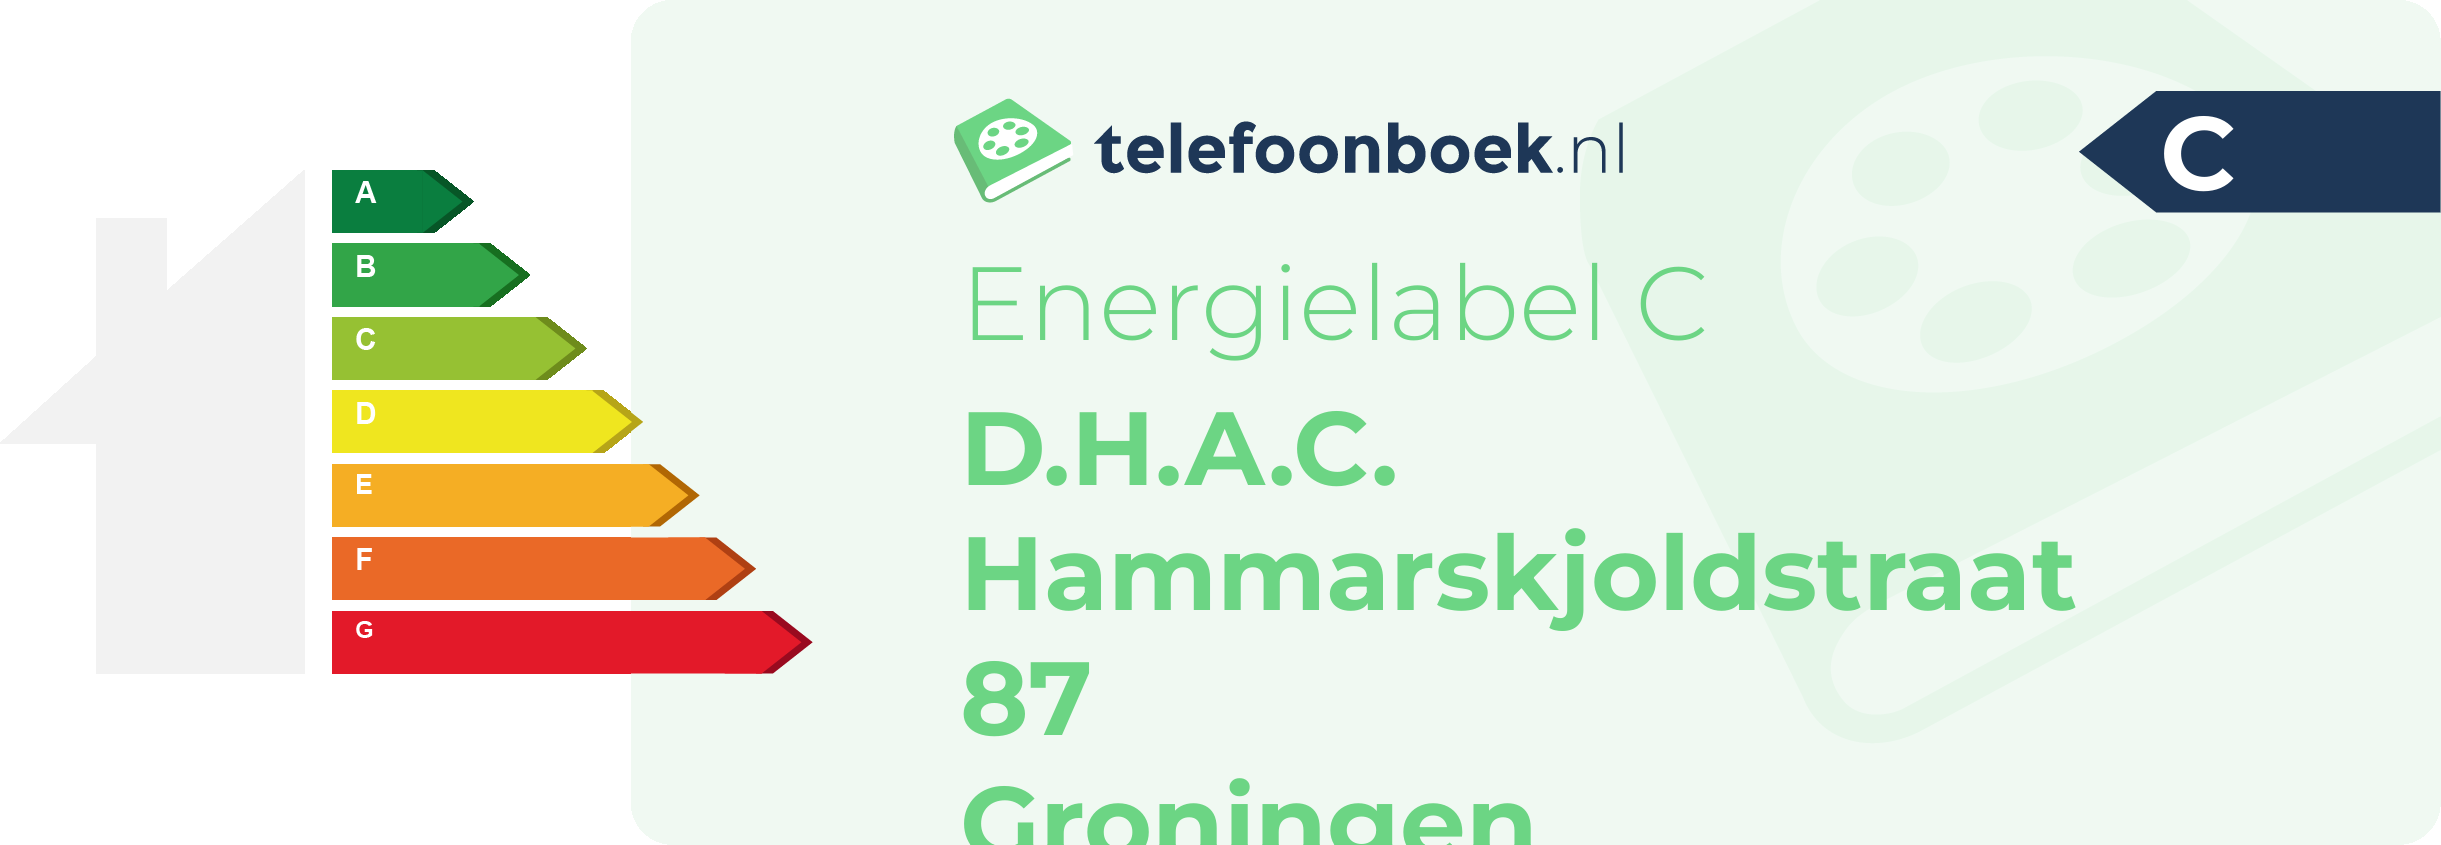 Energielabel D.H.A.C. Hammarskjoldstraat 87 Groningen